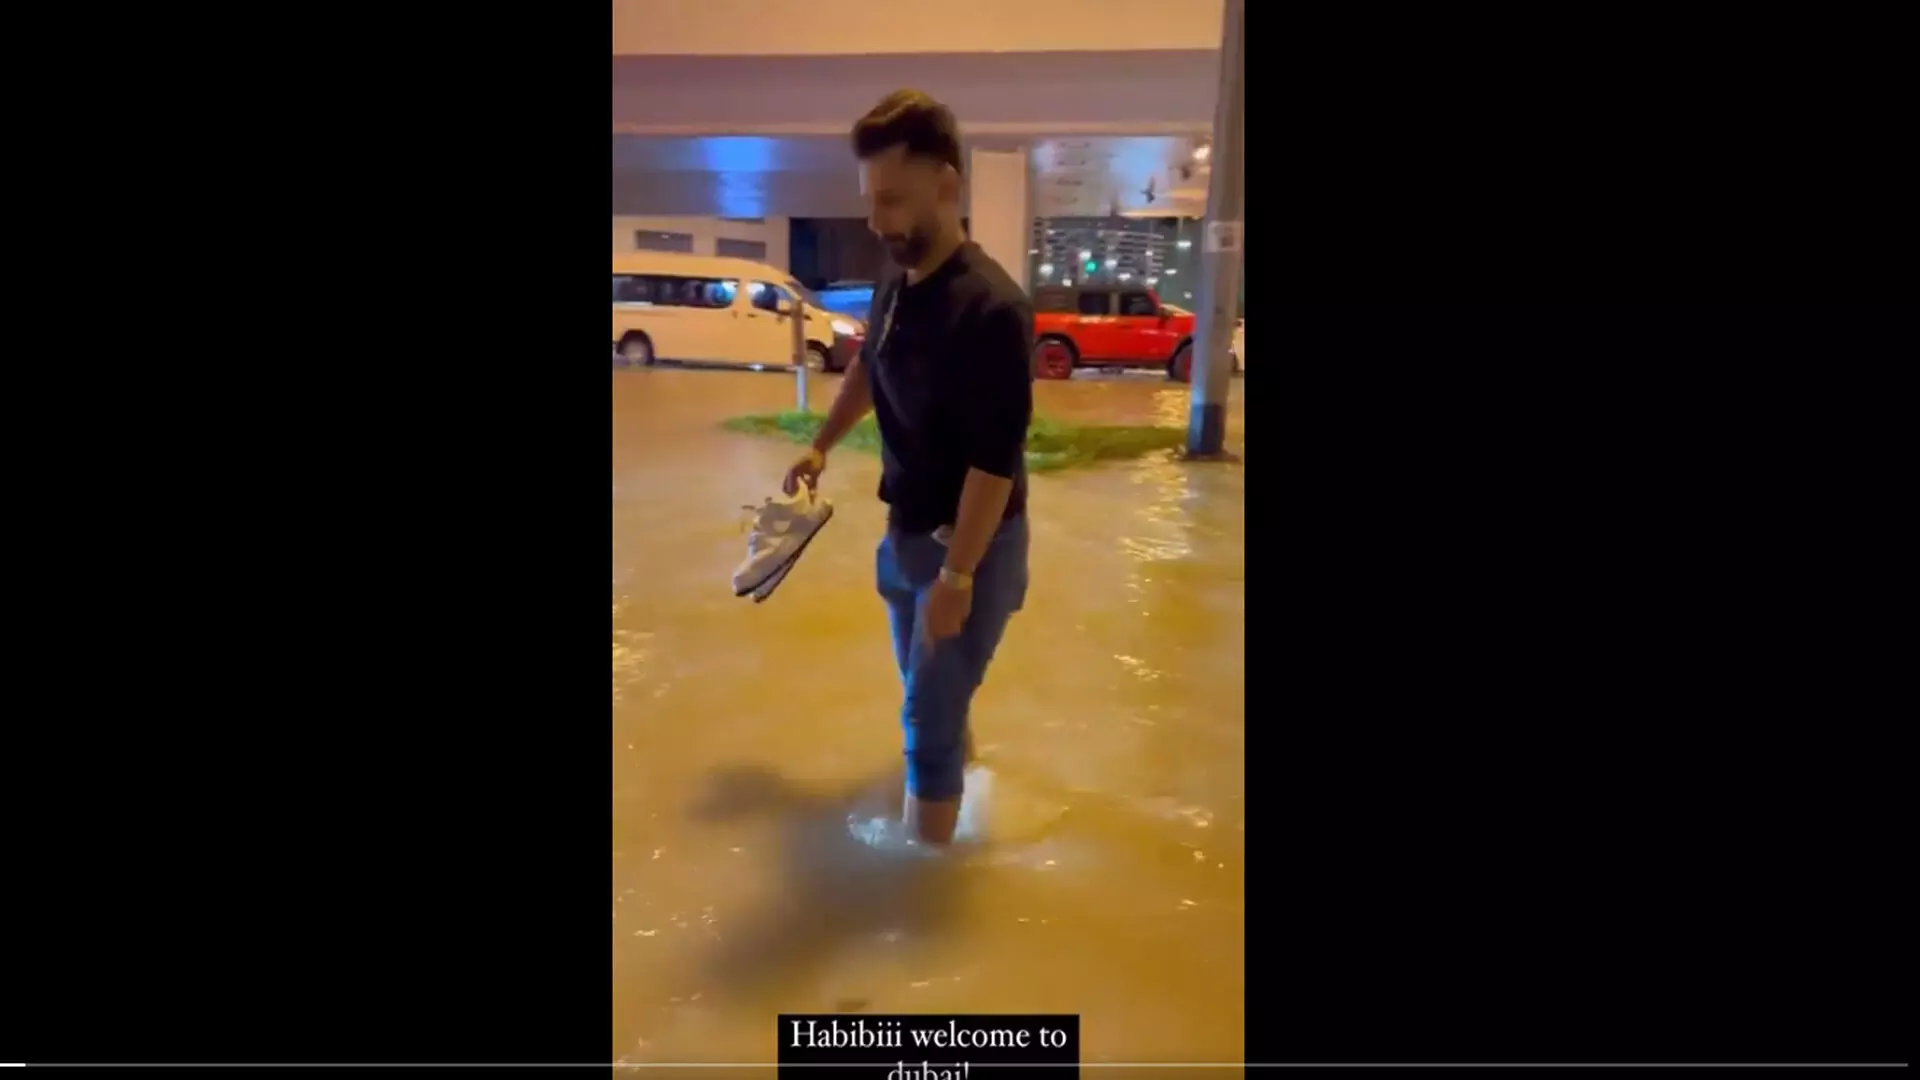 दुबई में भारी बारिश के कारण घुटनों तक पानी में फंसे गायक राहुल वैद्य, शेयर किया वीडियो...